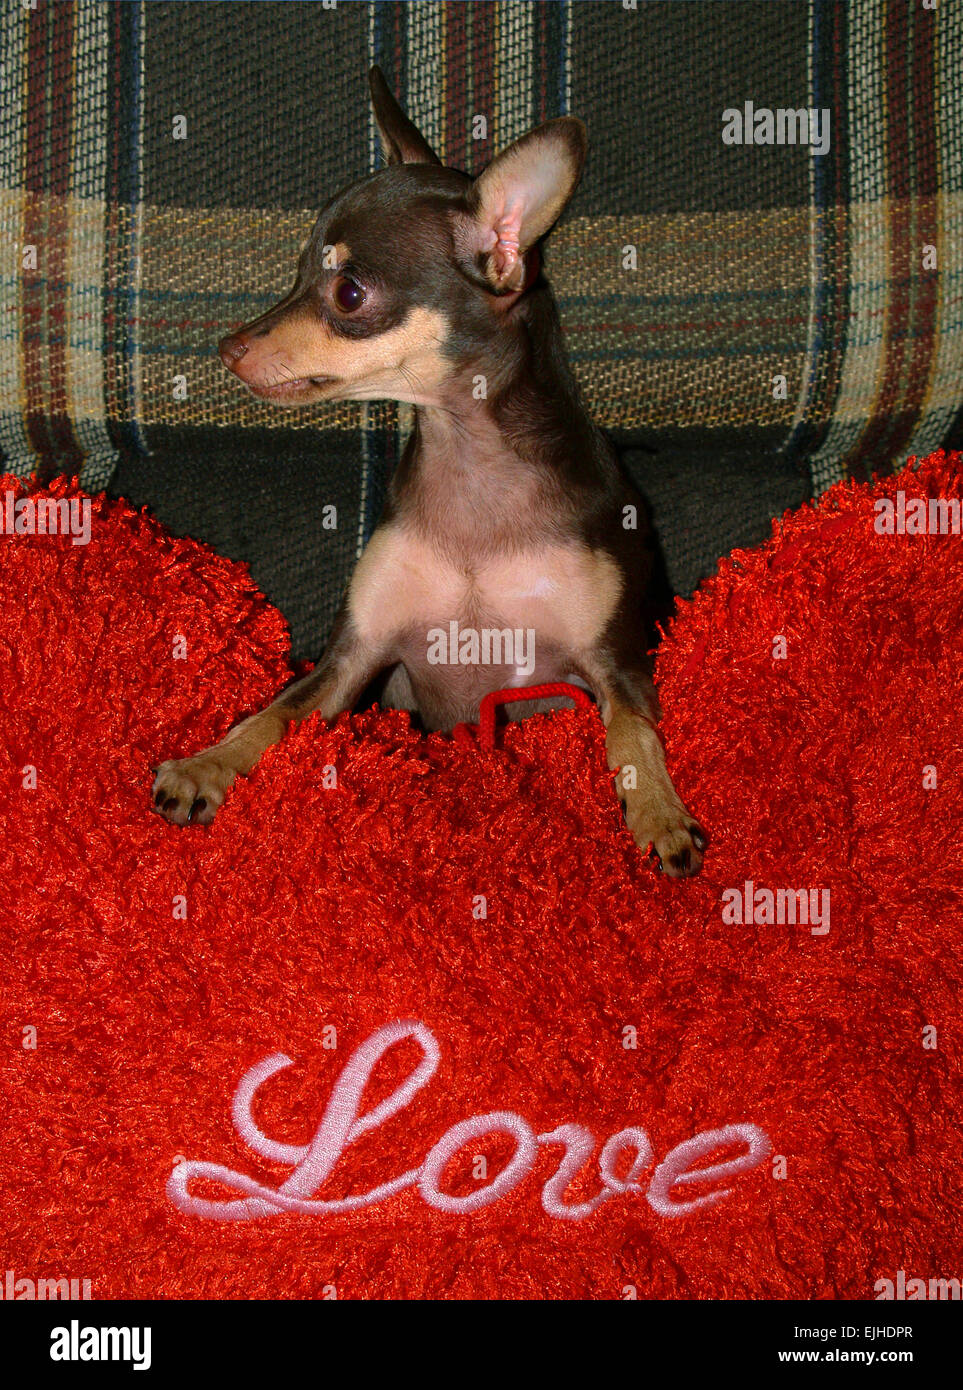 Jouet chien terrier sur l'oreiller rouge qui dit que l'amour. Banque D'Images